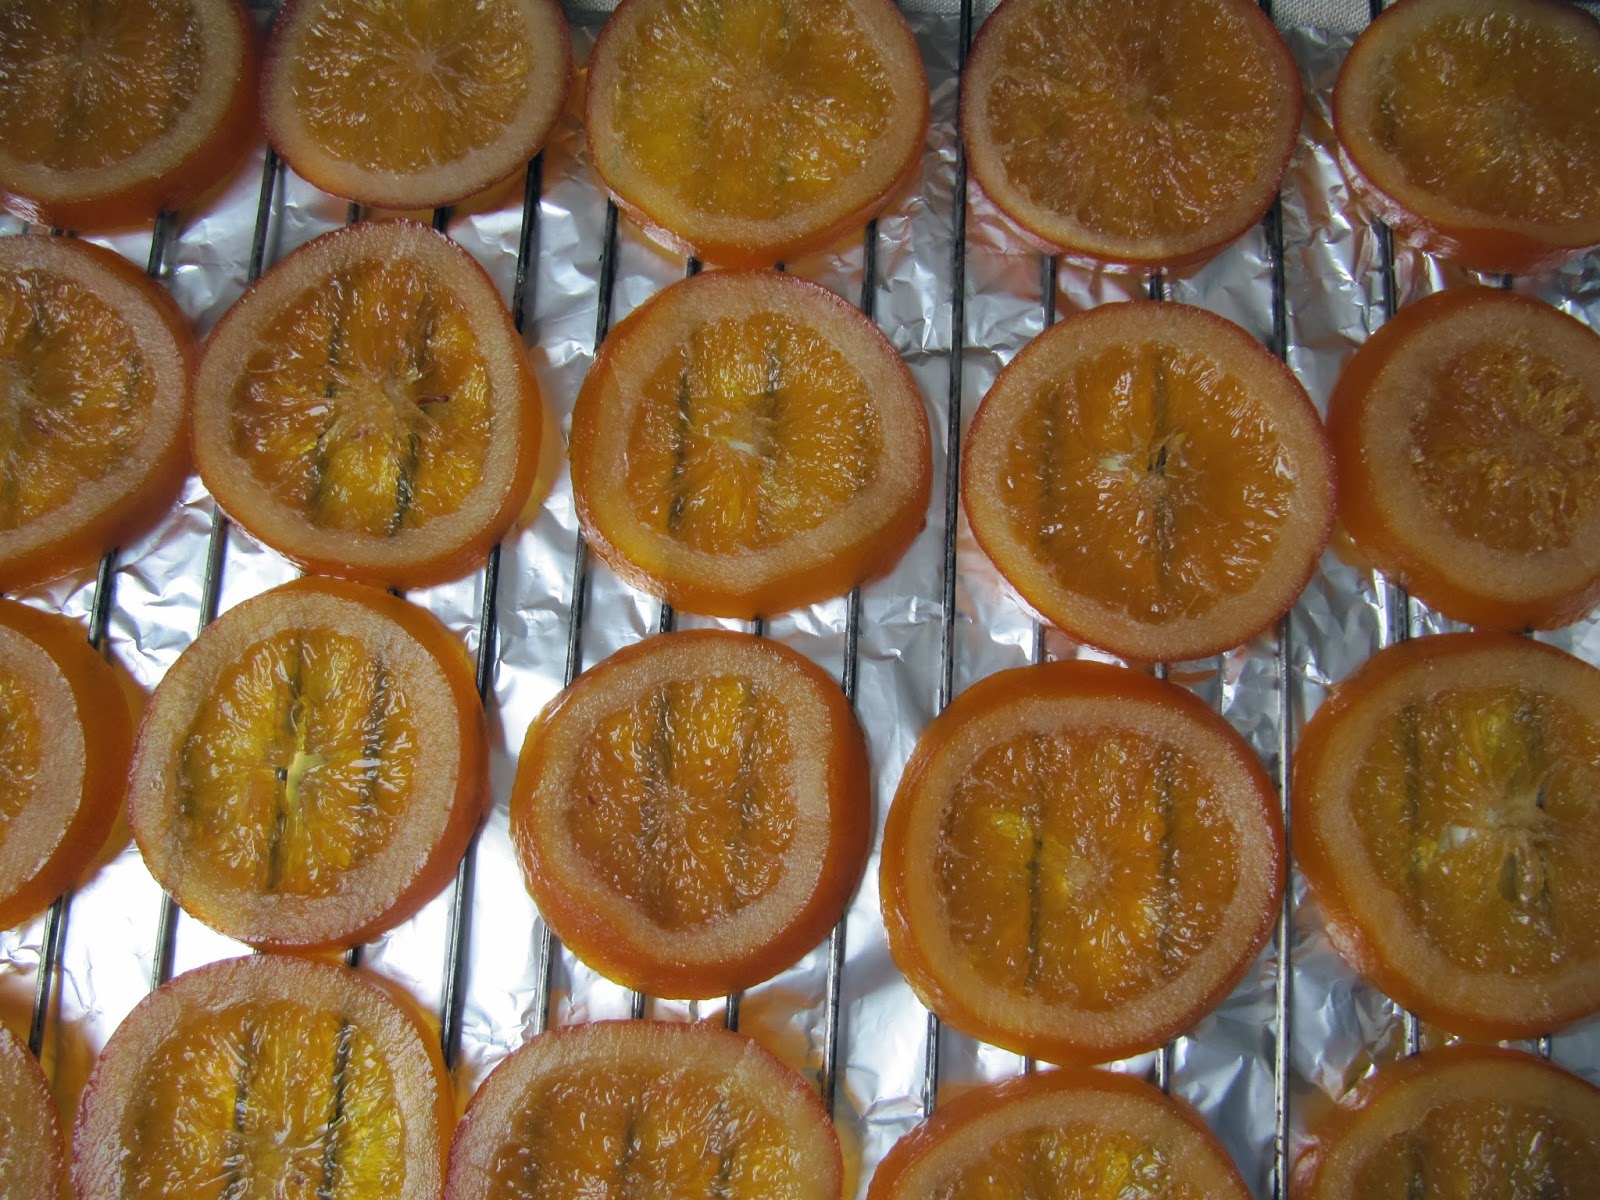 La cuisine d'ici et d'ISCA: Tranches d'orange confites